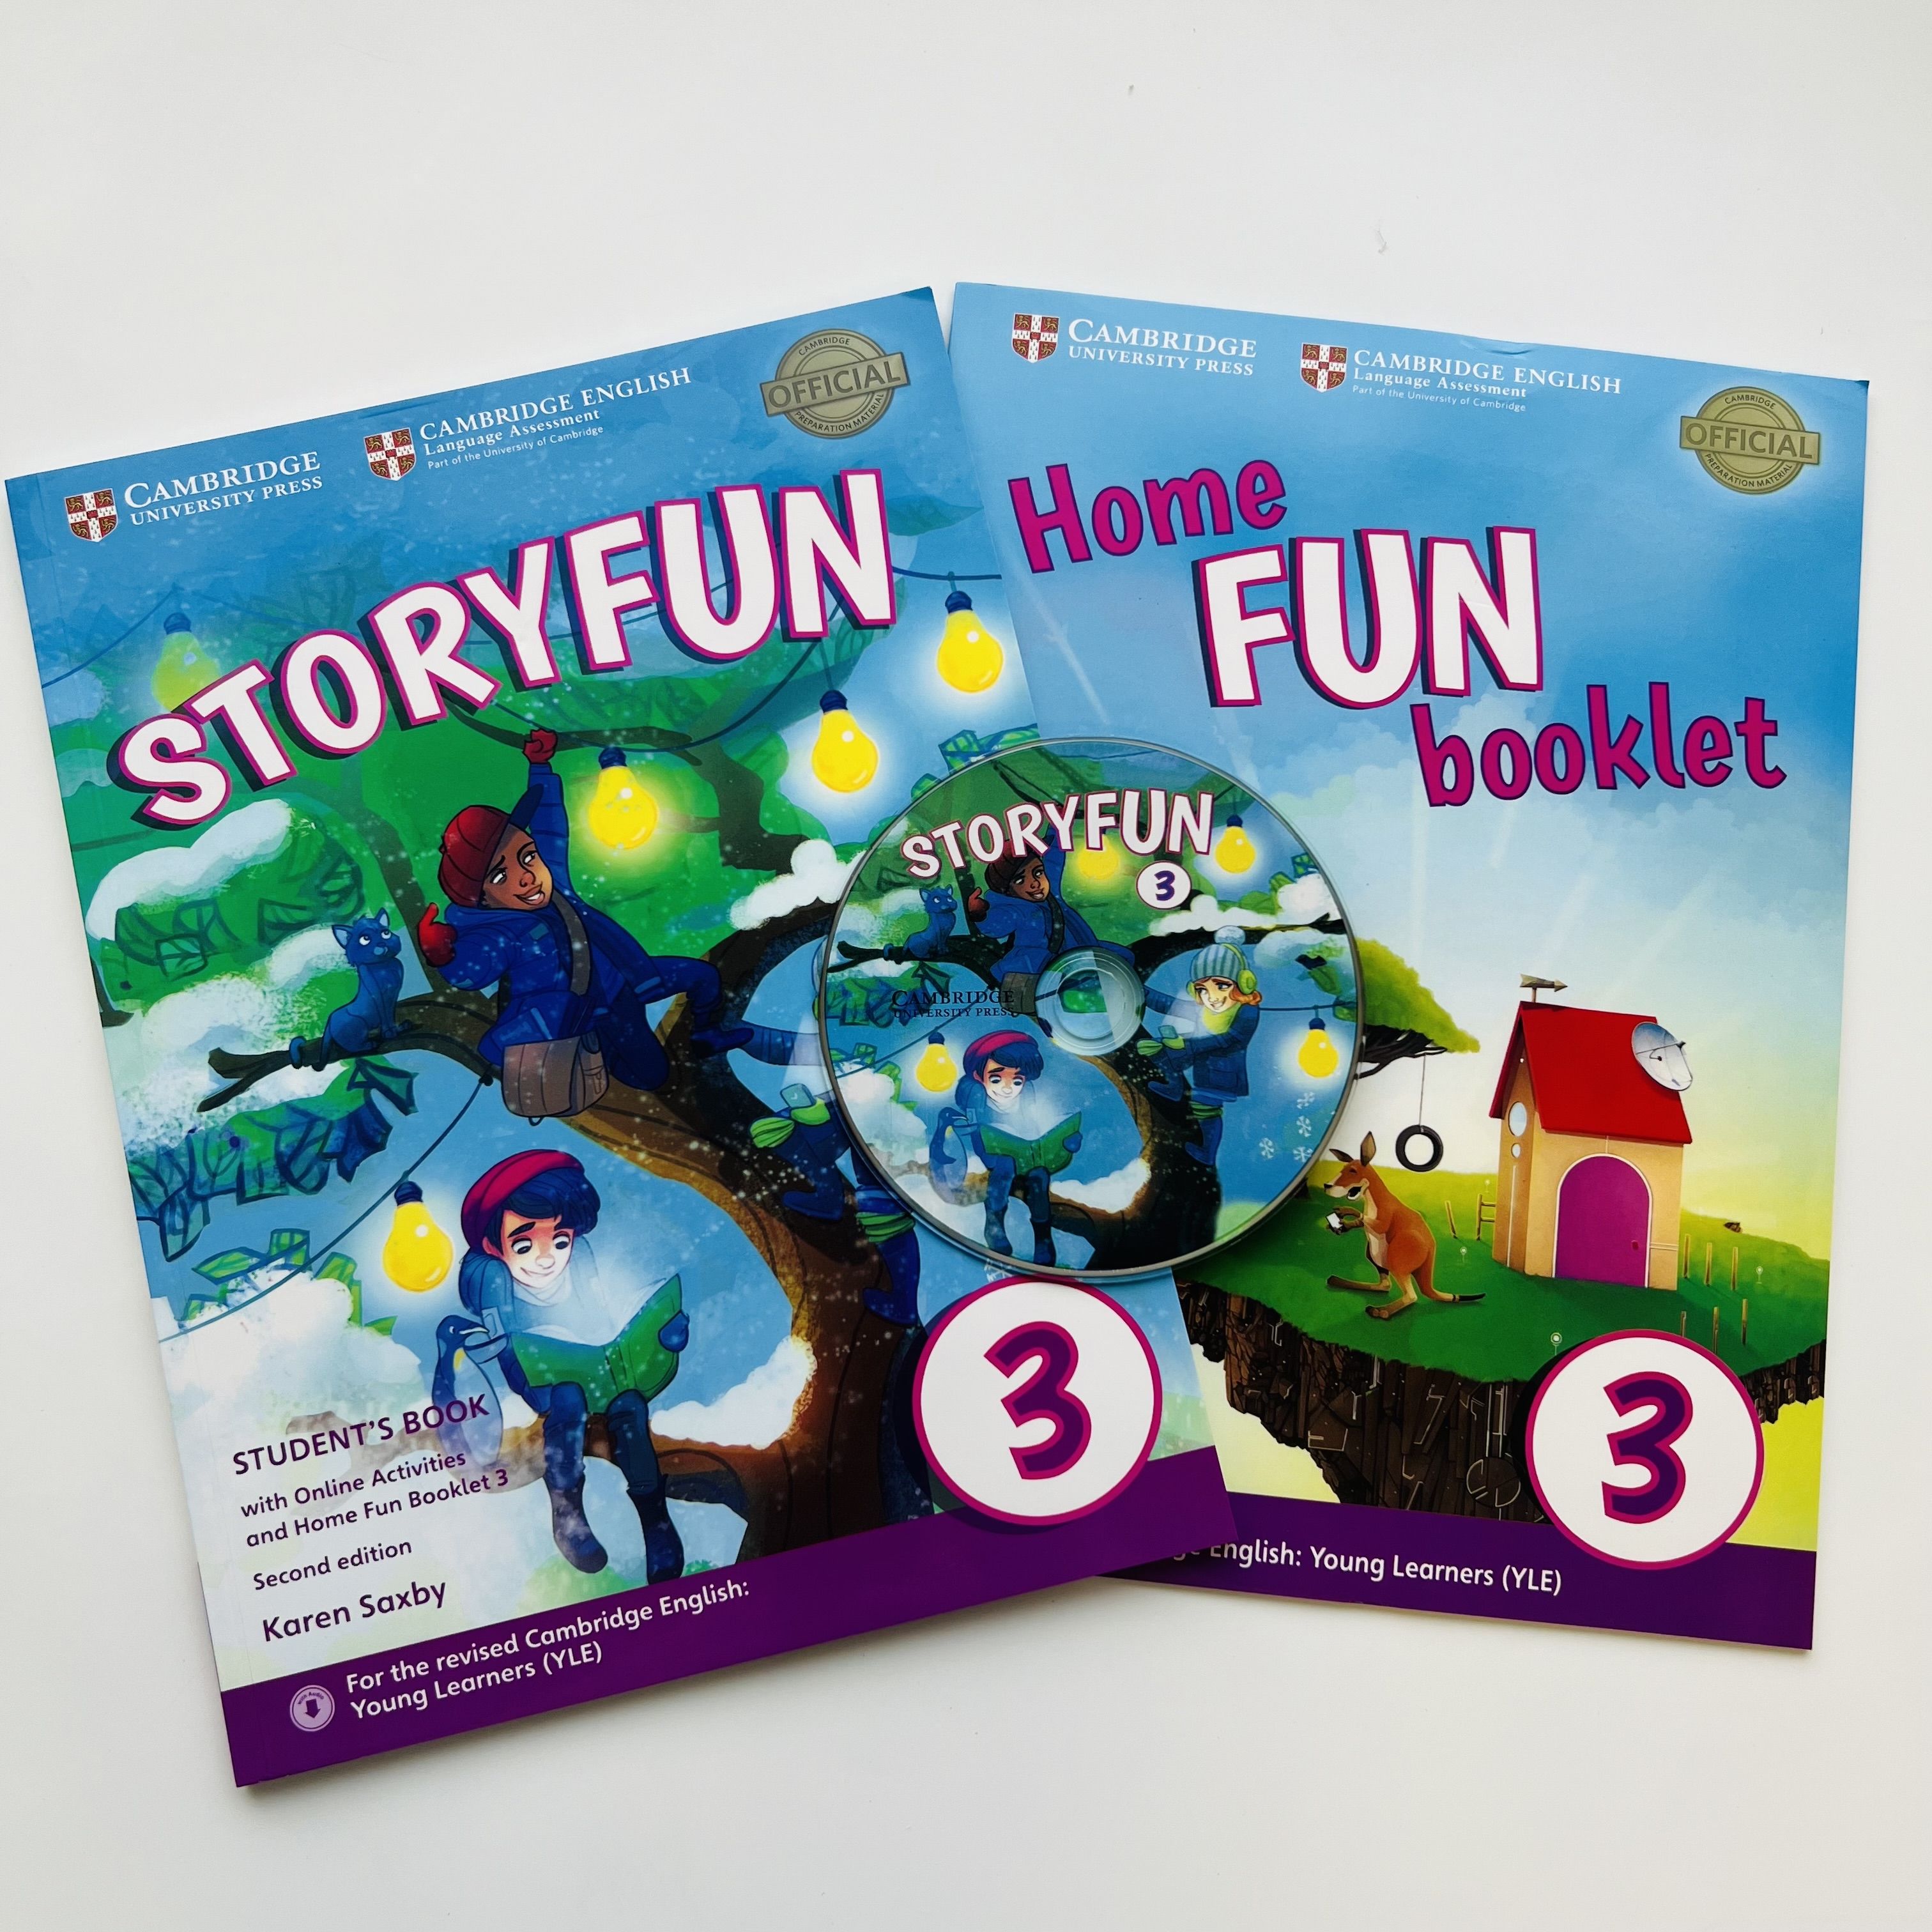 Home fun booklet. Storyfun.